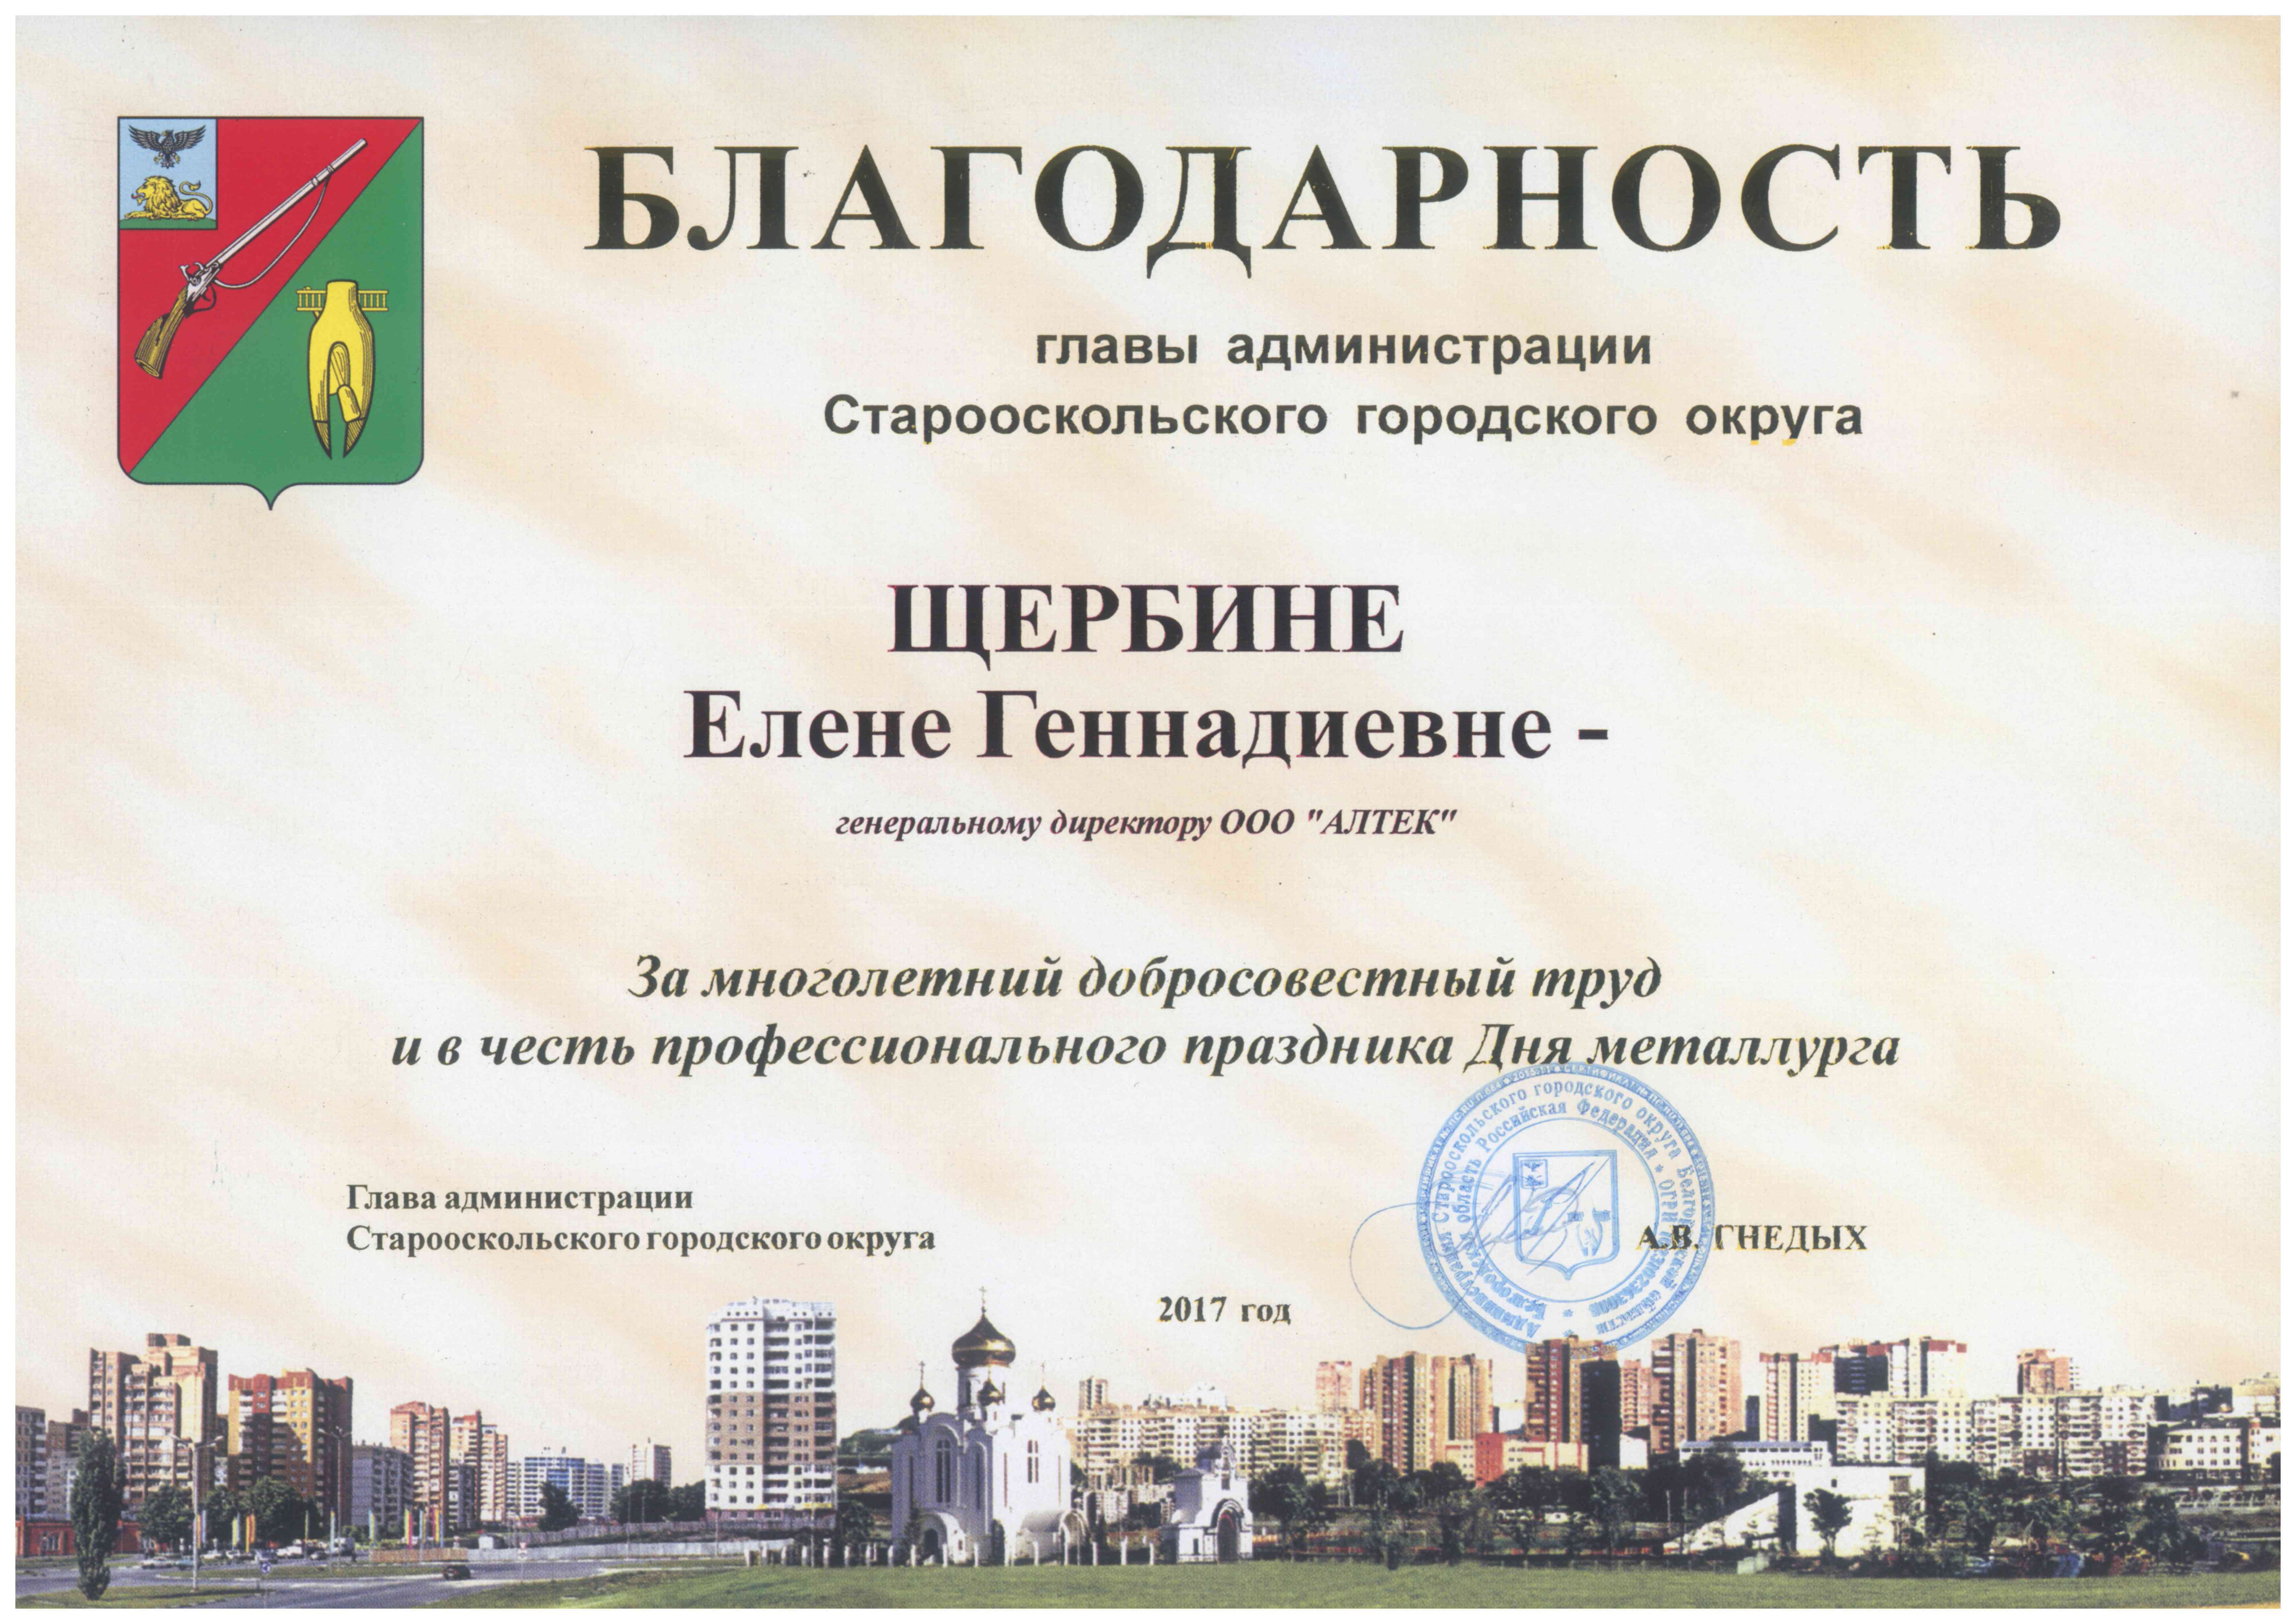 Dank des Verwaltungsleiters des Stadtbezirks Starooskolsk